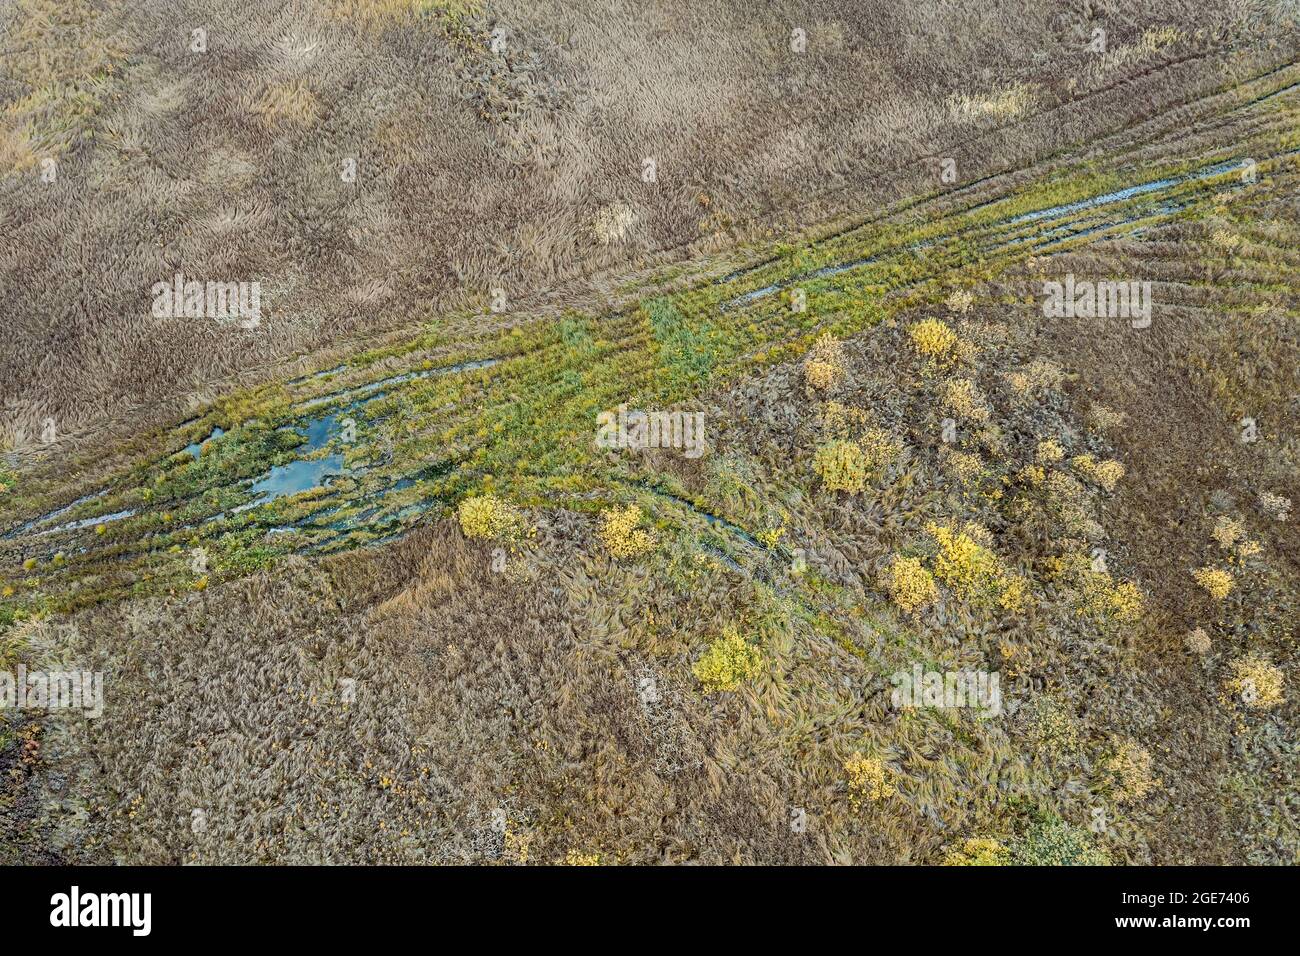 strada di campagna tra campi paludosi. paesaggio paludoso. vista aerea dal drone volante Foto Stock